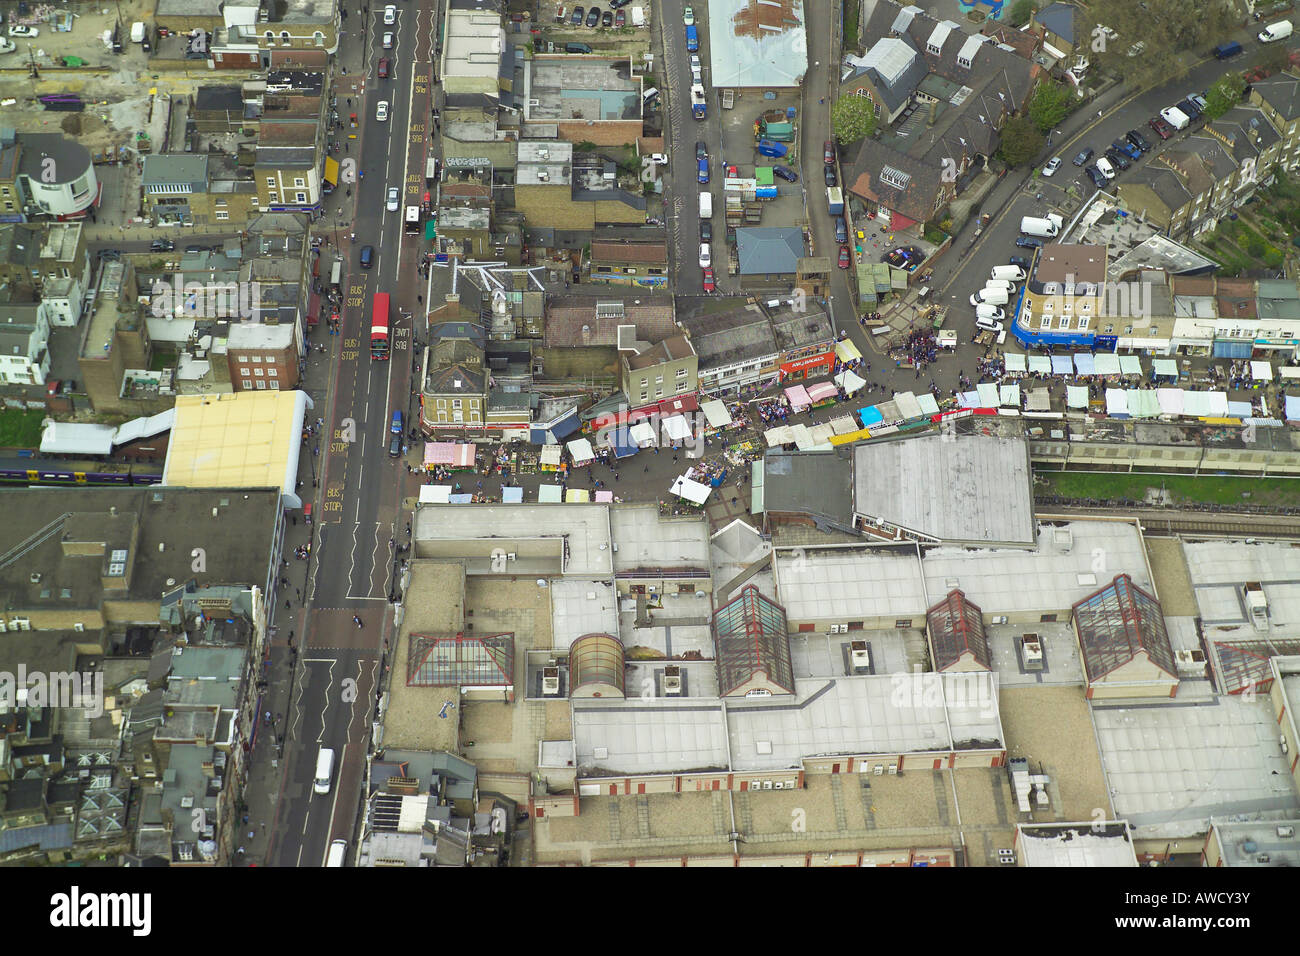 Vista aerea della Ridley Road Street Market in Dalston nella zona est di Londra che è anche noto come mercato Dalston Foto Stock